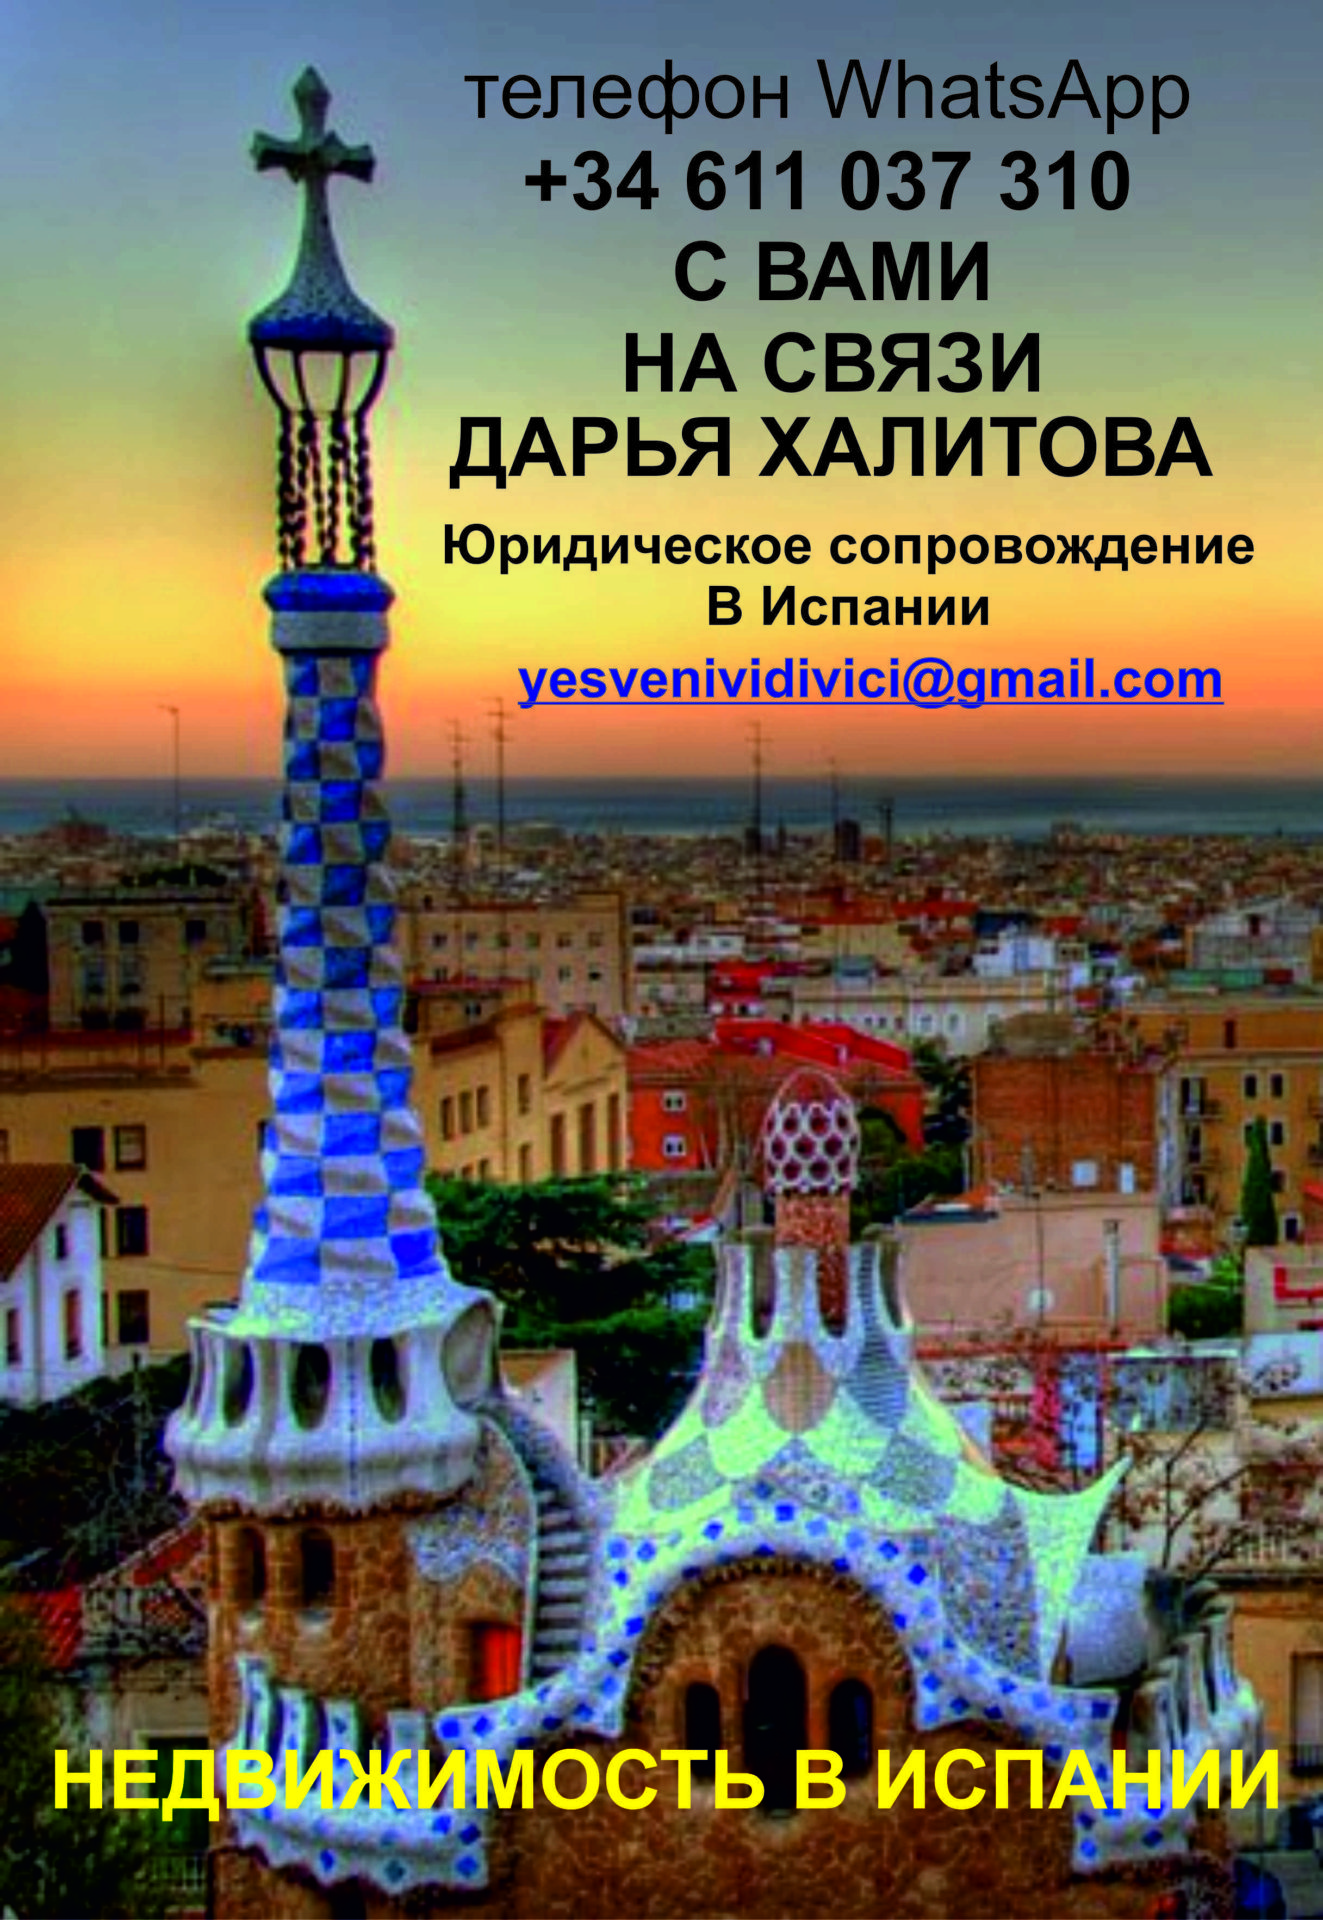 http://verticalsad.ru/texnologiya-sozdaniya/vashe-soprovozhd…endatelnoe-pismo.html ‎